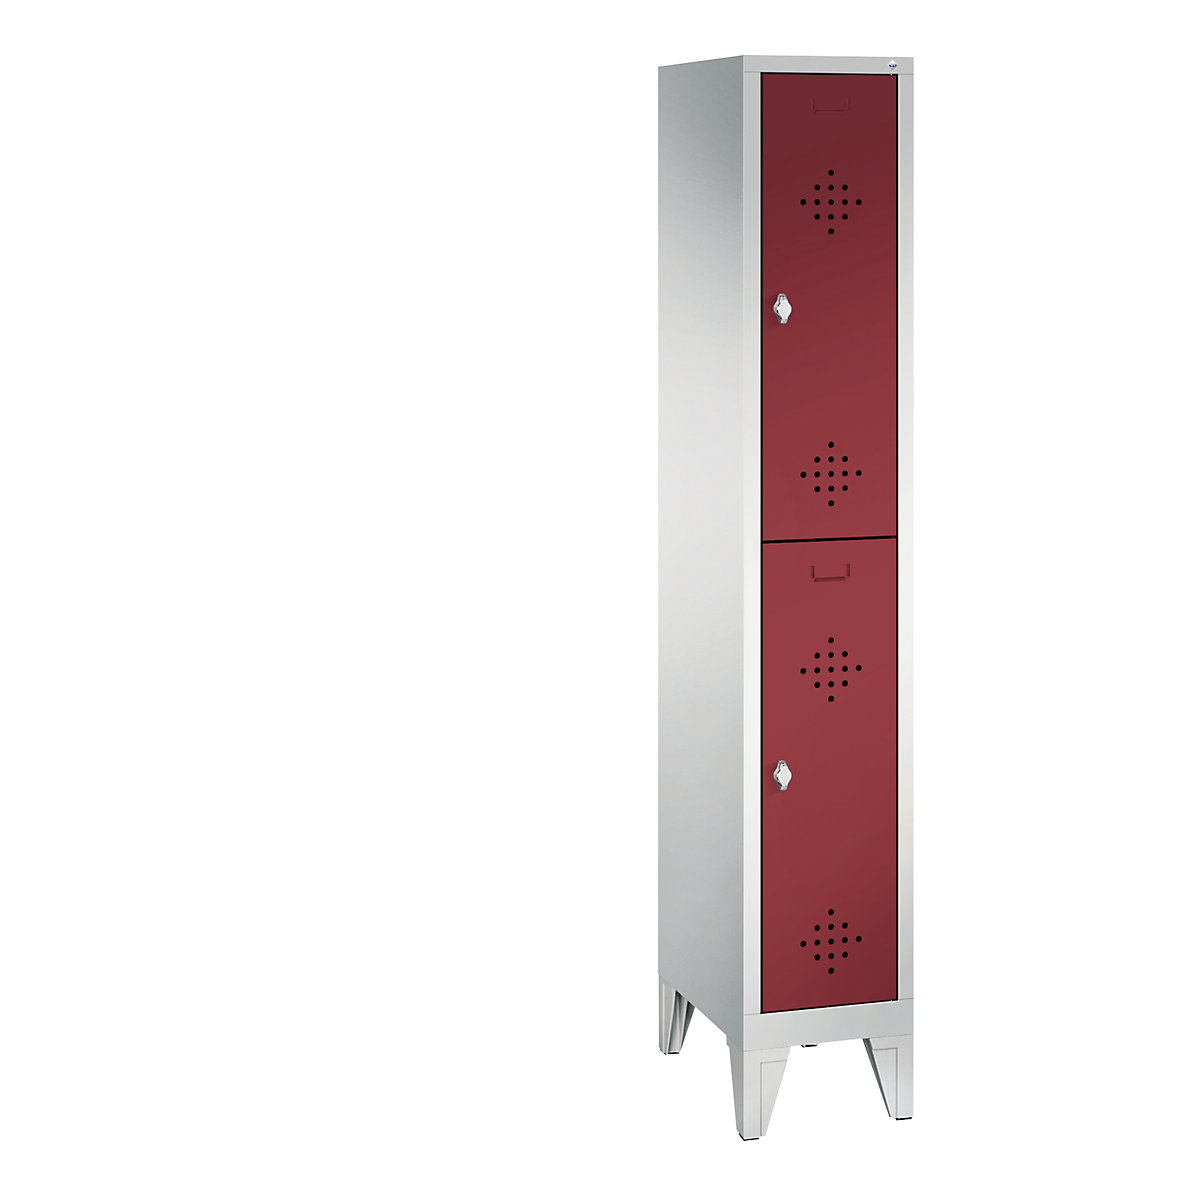 Armadietto guardaroba CLASSIC, a due piani, con piedini – C+P, 1 vano, 2 scomparti per vano, larghezza vano 300 mm, grigio chiaro / rosso rubino-11